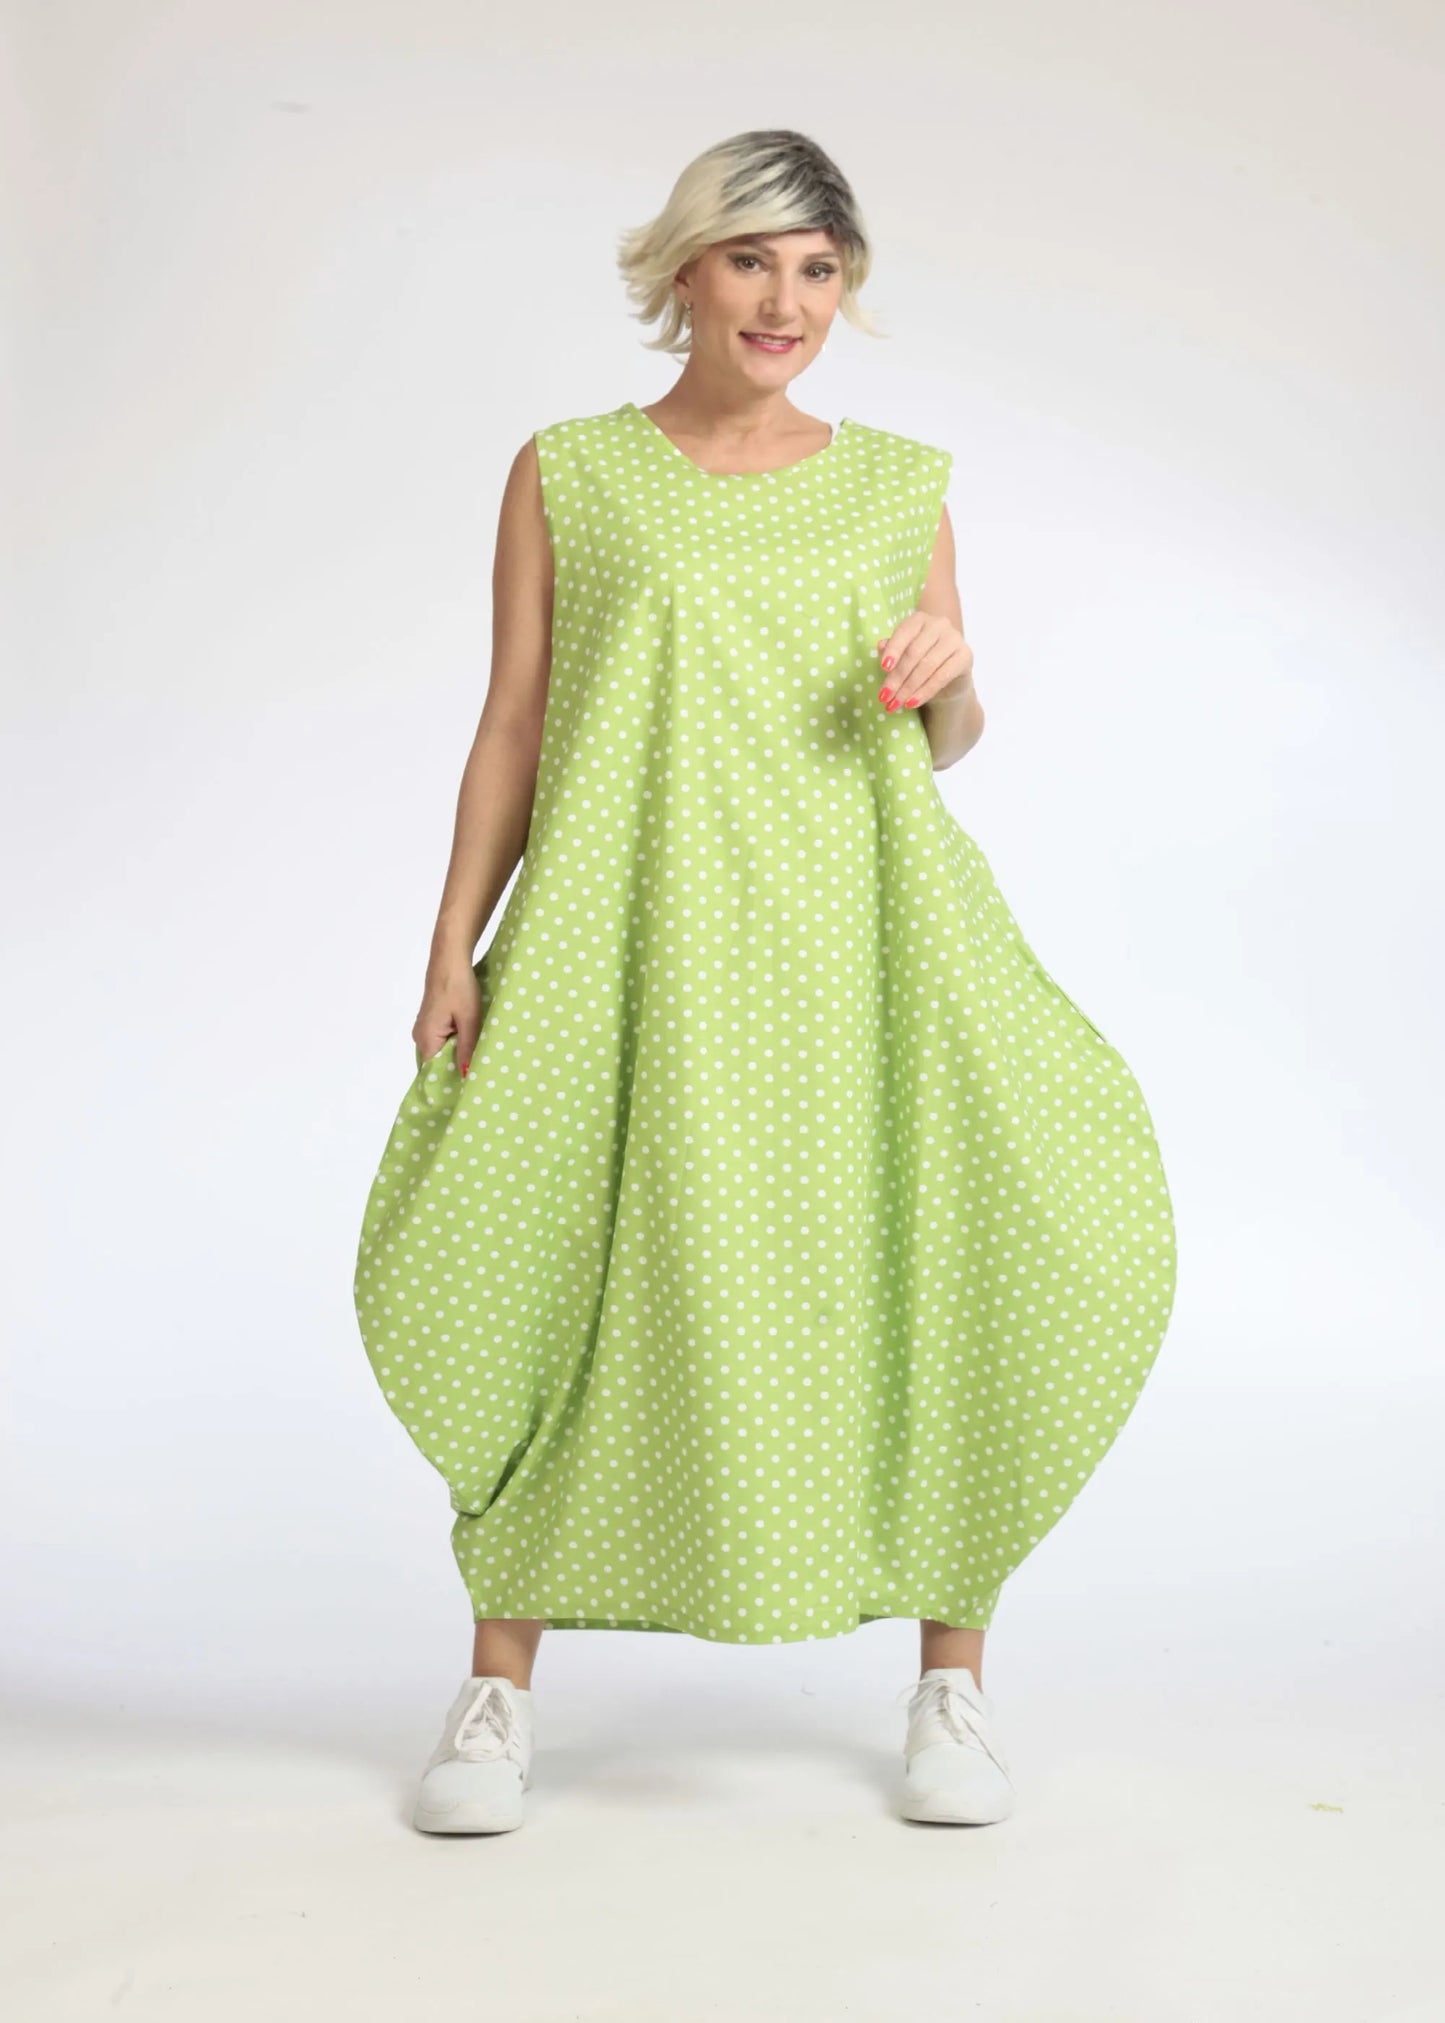 Sommer Kleid in Ballon Form aus glatter Popeline Qualität, Freya in Apfelgrün-Weiß